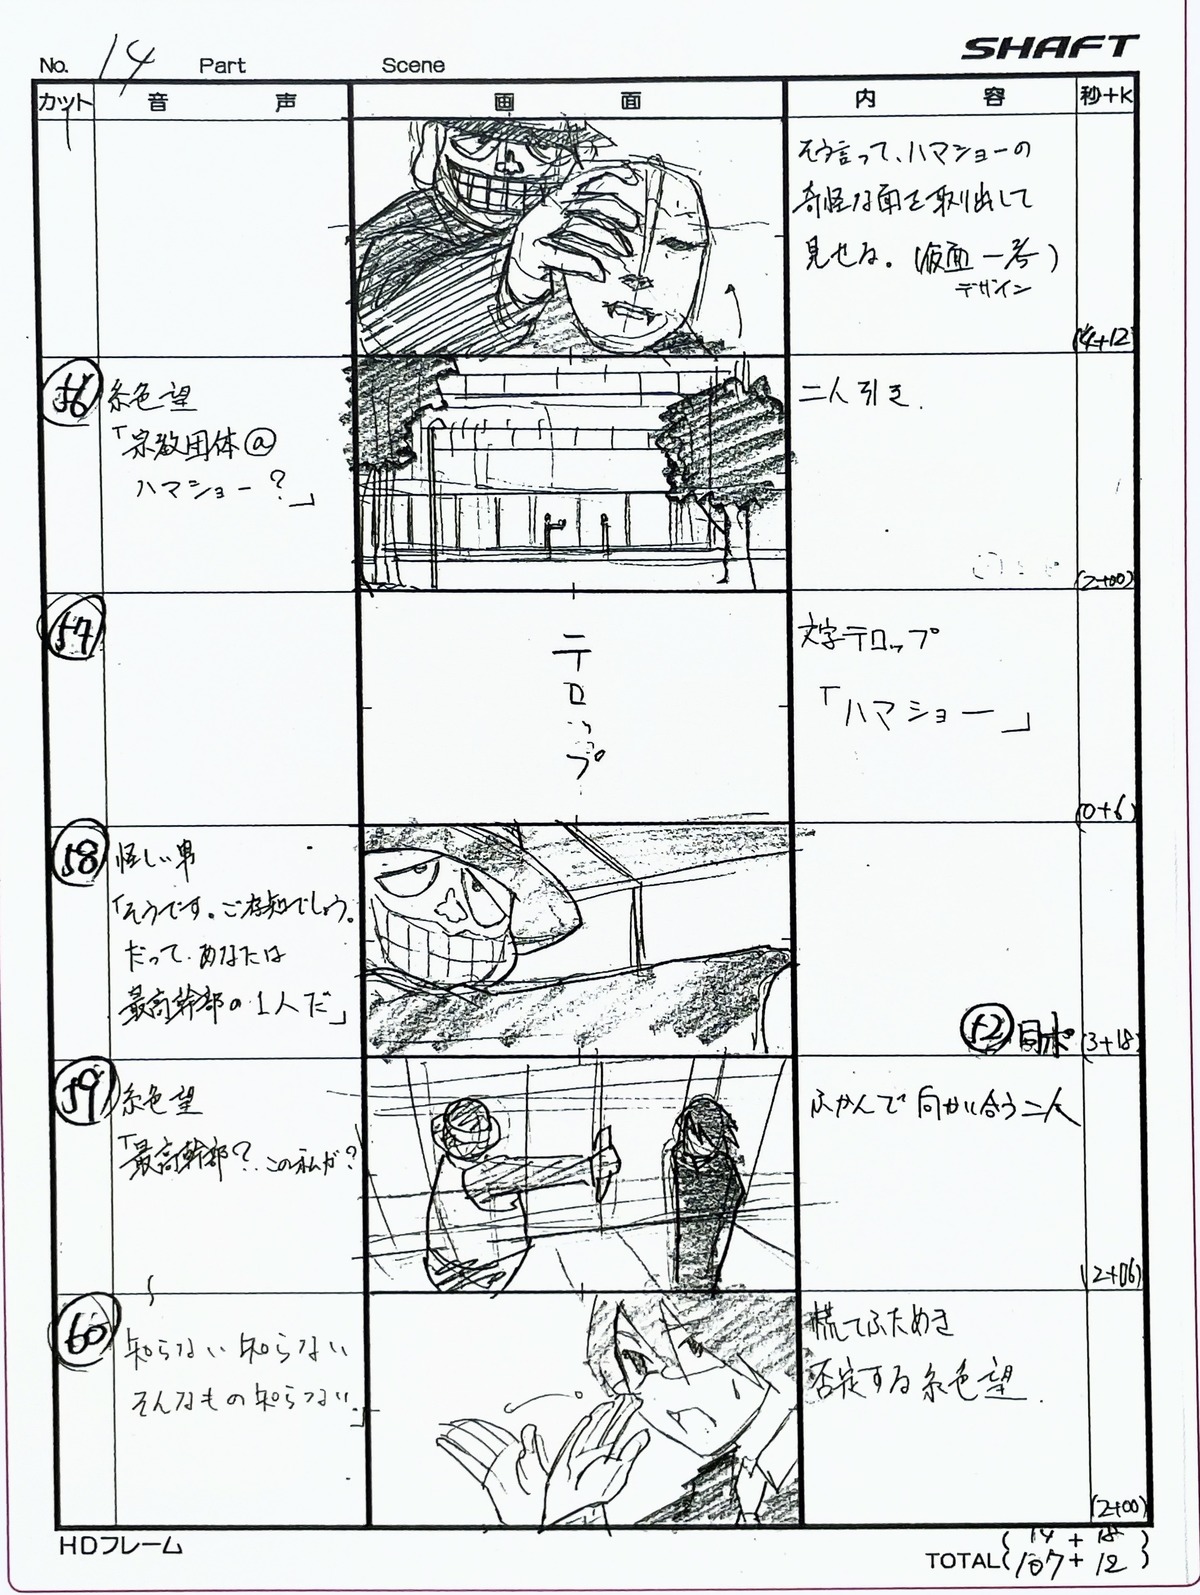 production_materials sayonara_zetsubou_sensei storyboard yukihiro_miyamoto zoku_sayonara_zetsubou_sensei